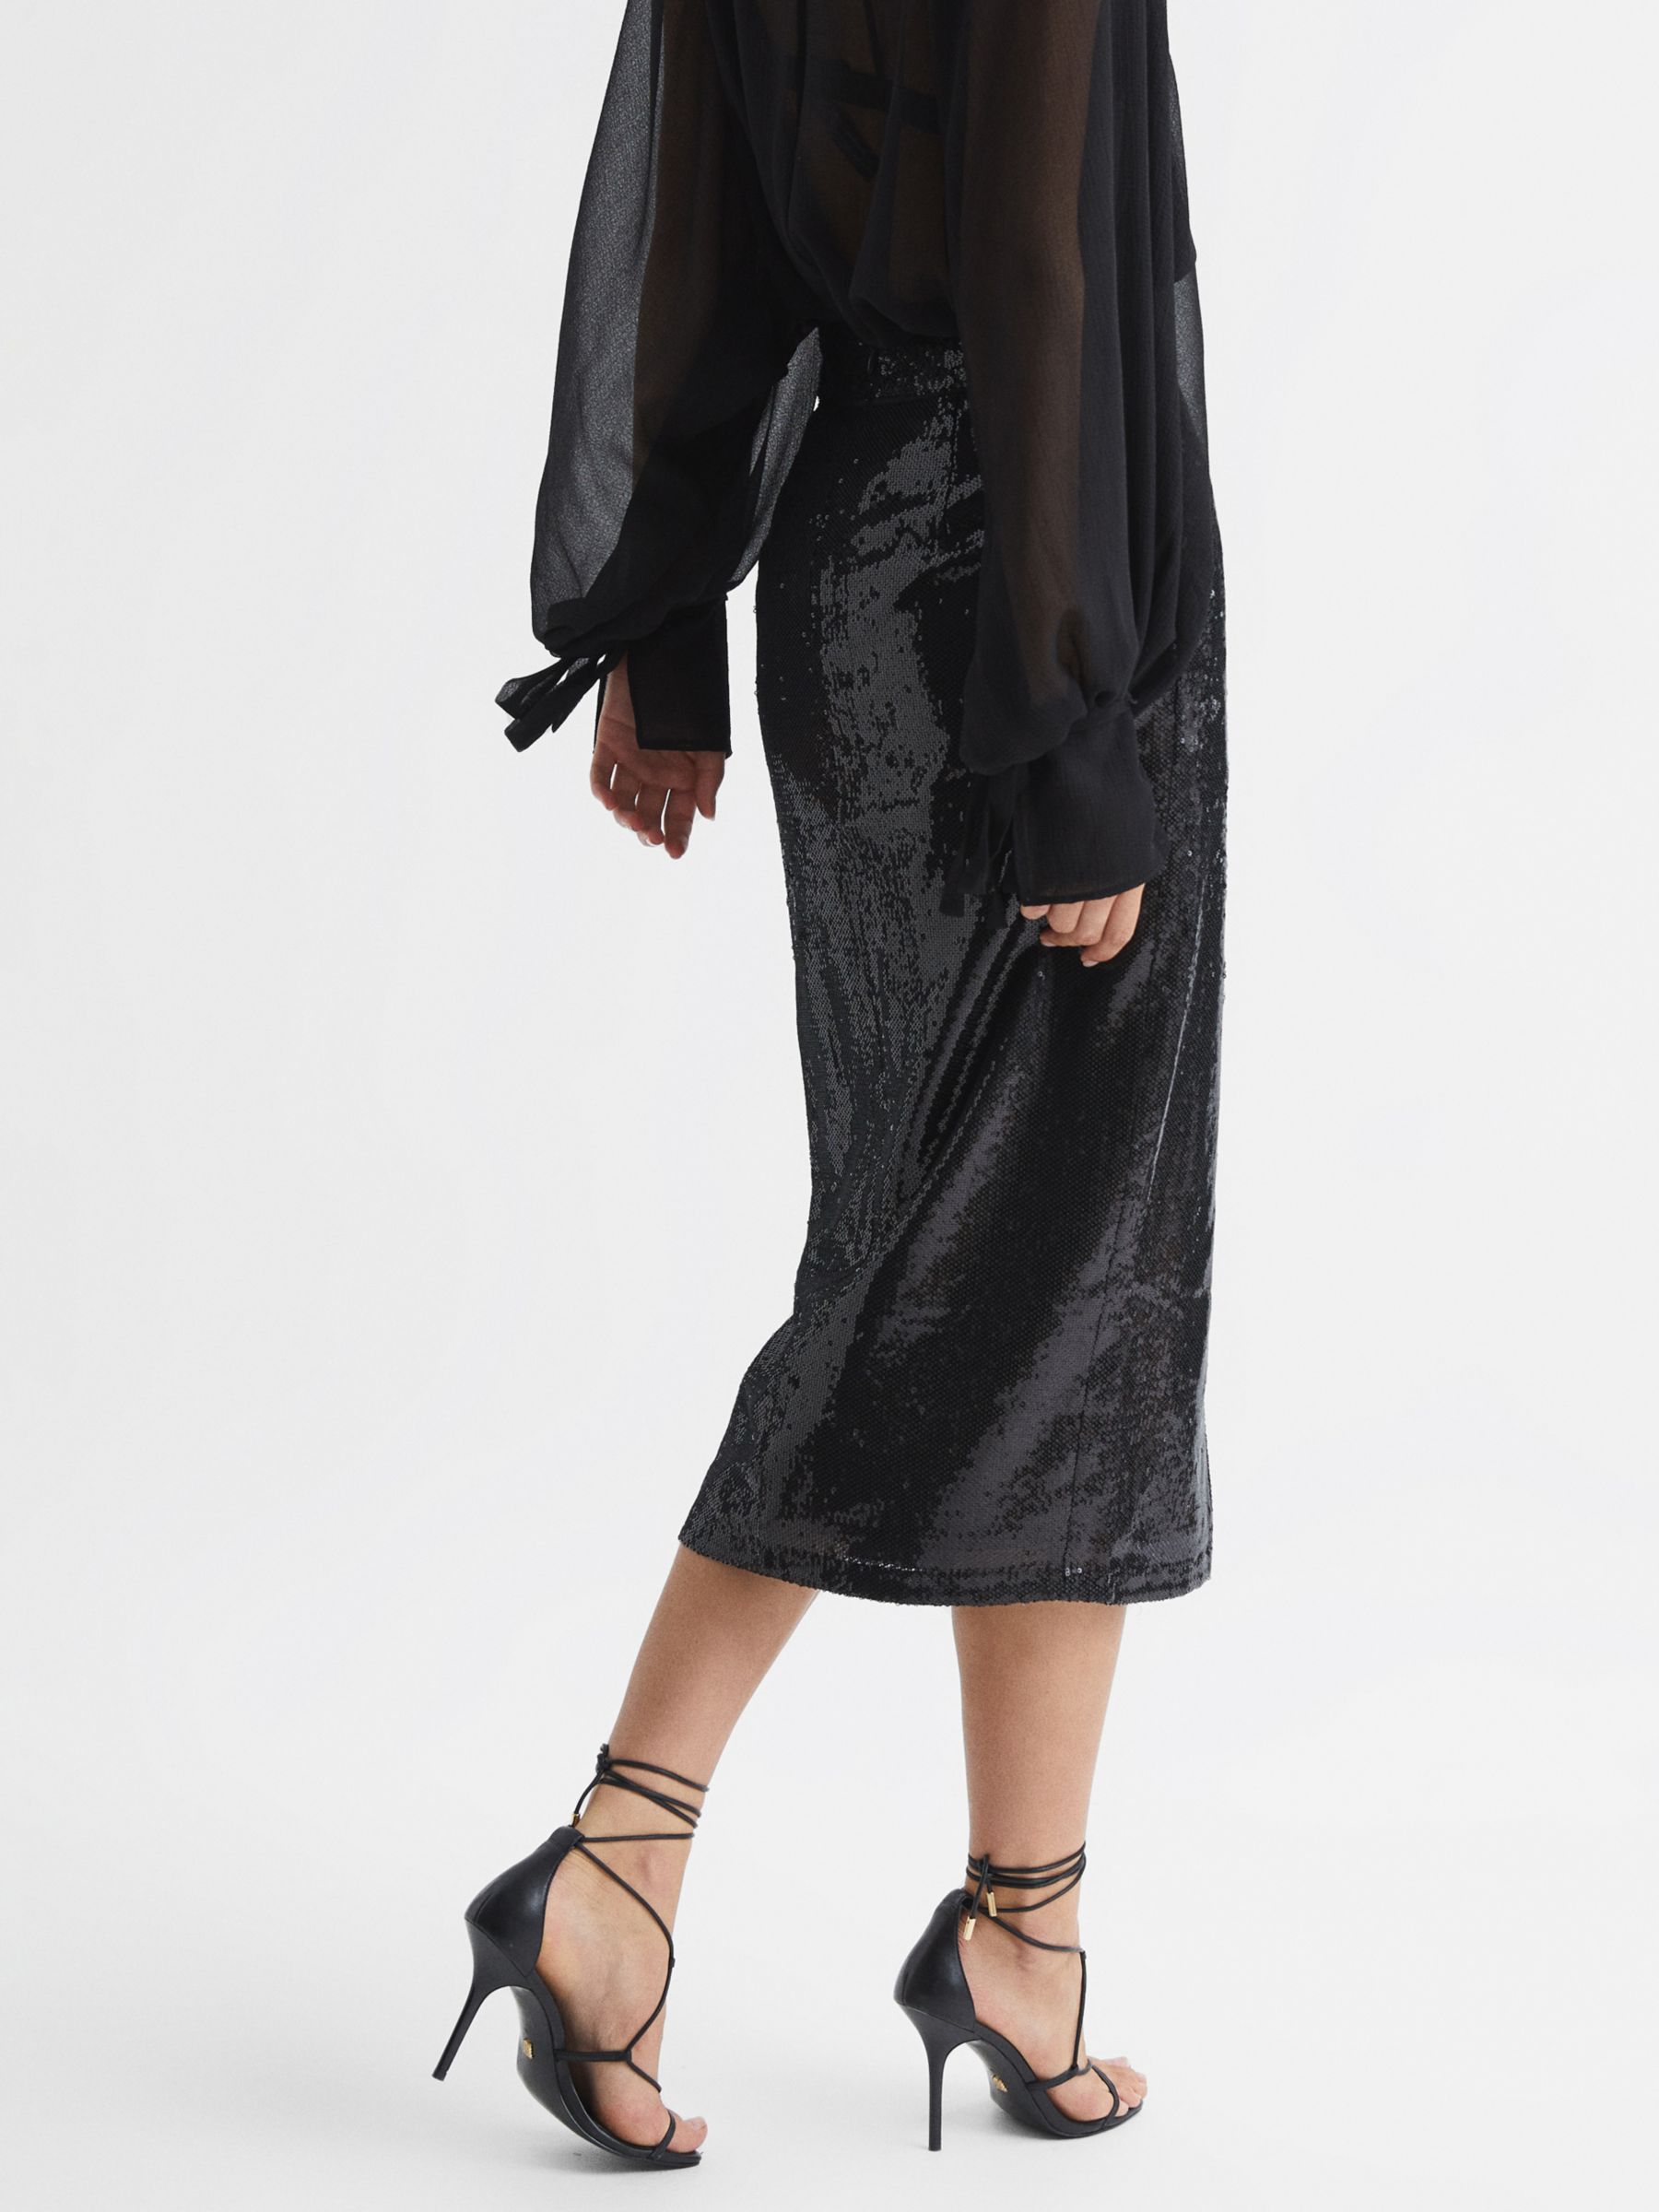 Reiss Dakota Sequin Midi Skirt, Black at John Lewis & Partners